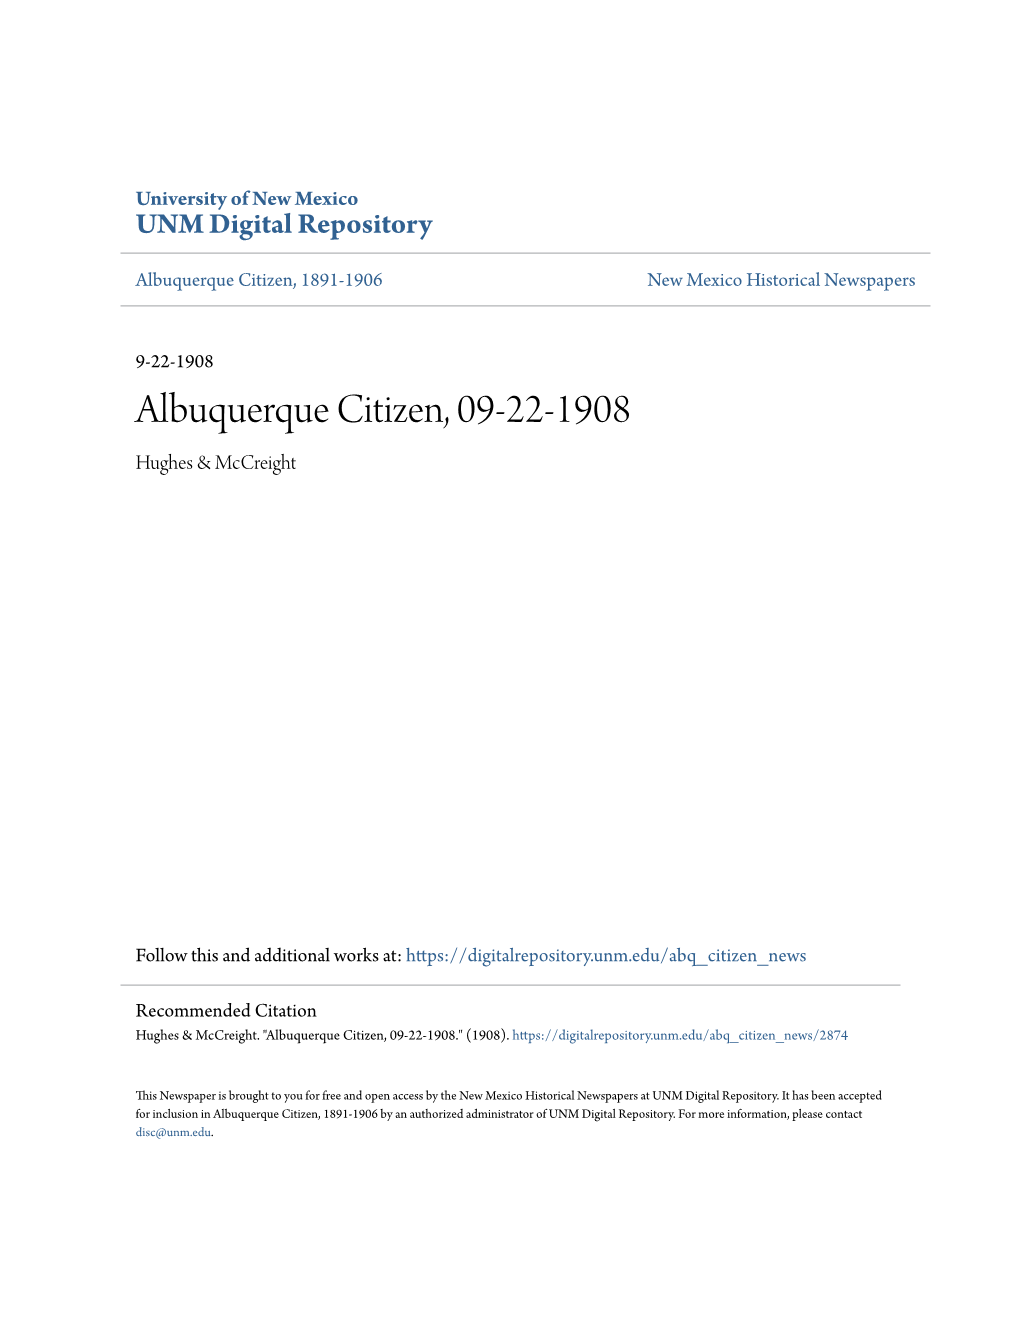 Albuquerque Citizen, 09-22-1908 Hughes & Mccreight